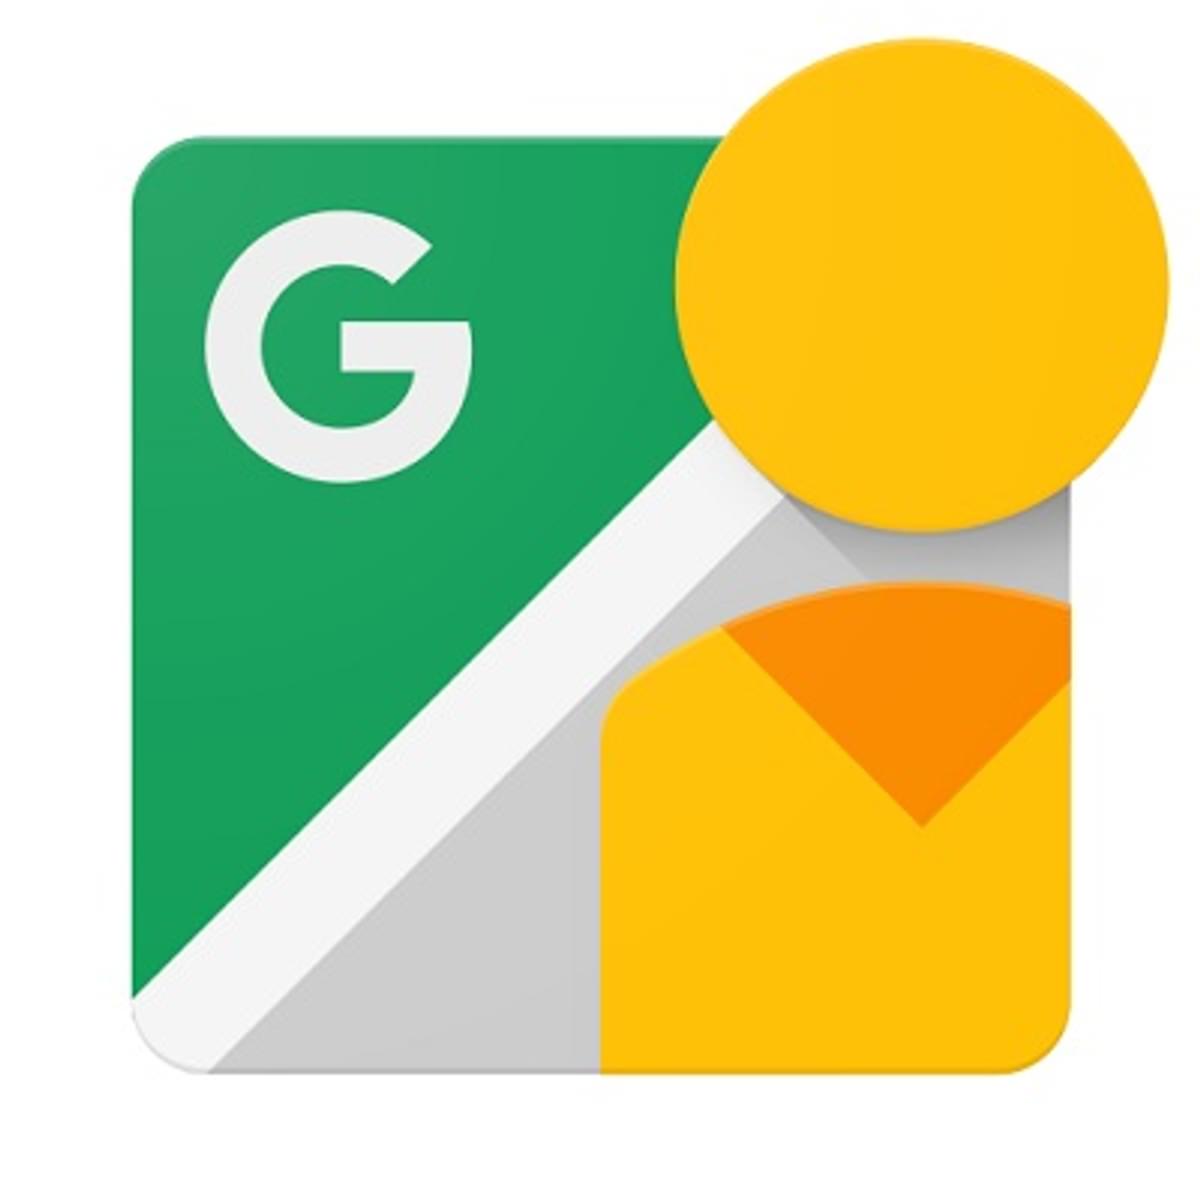 Het doek valt voor Googles aparte Street View-app image